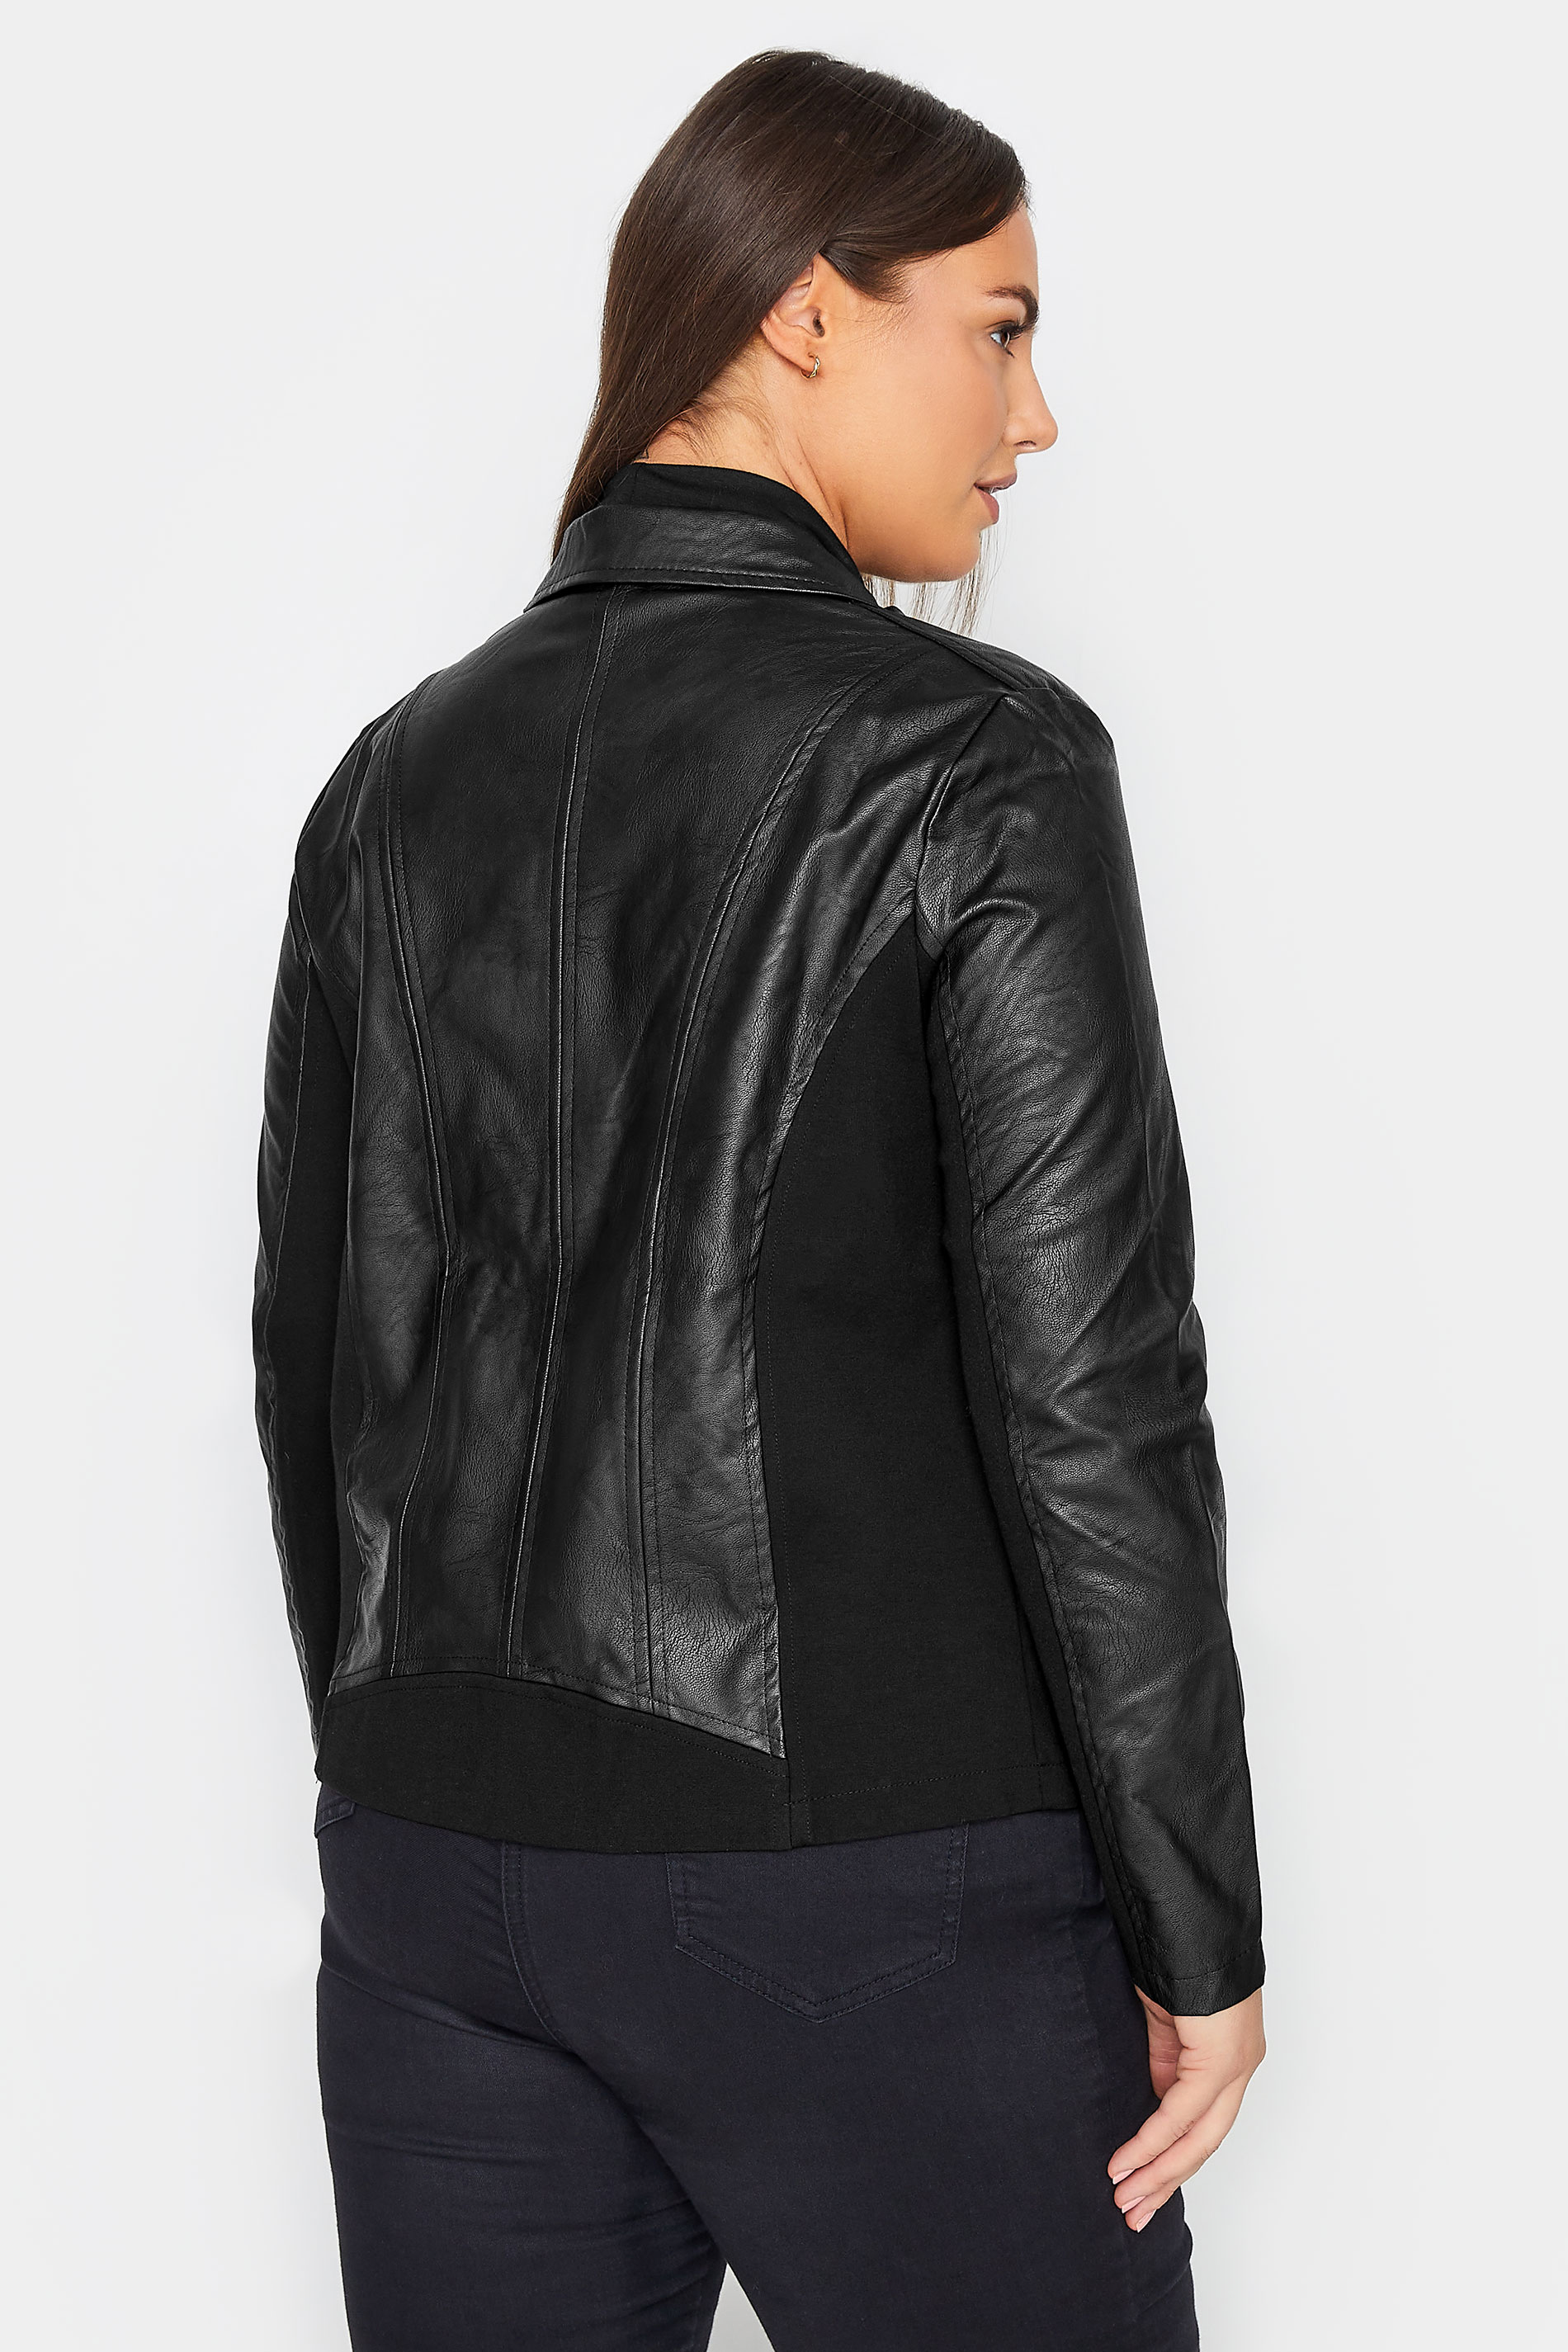 Evans Baptiste Black Embellished Faux Leather Jacket 3